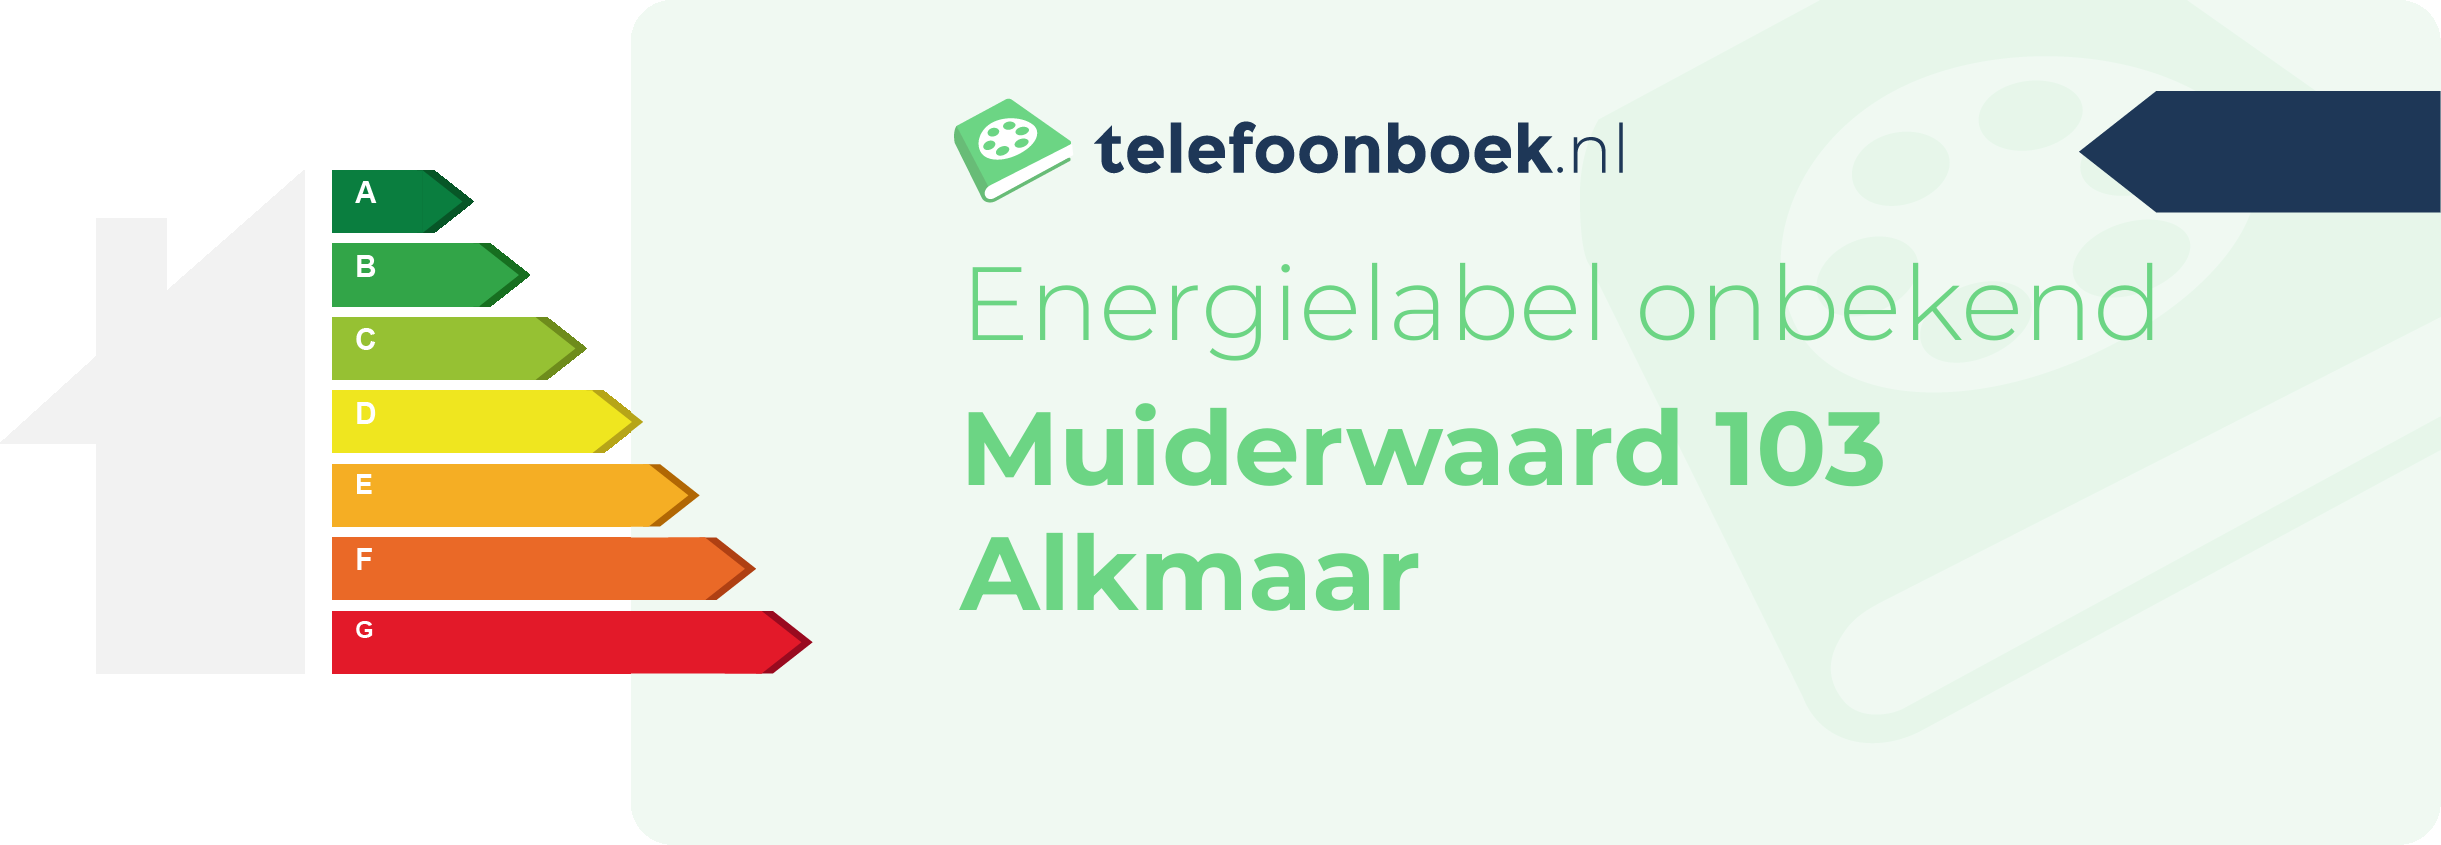 Energielabel Muiderwaard 103 Alkmaar